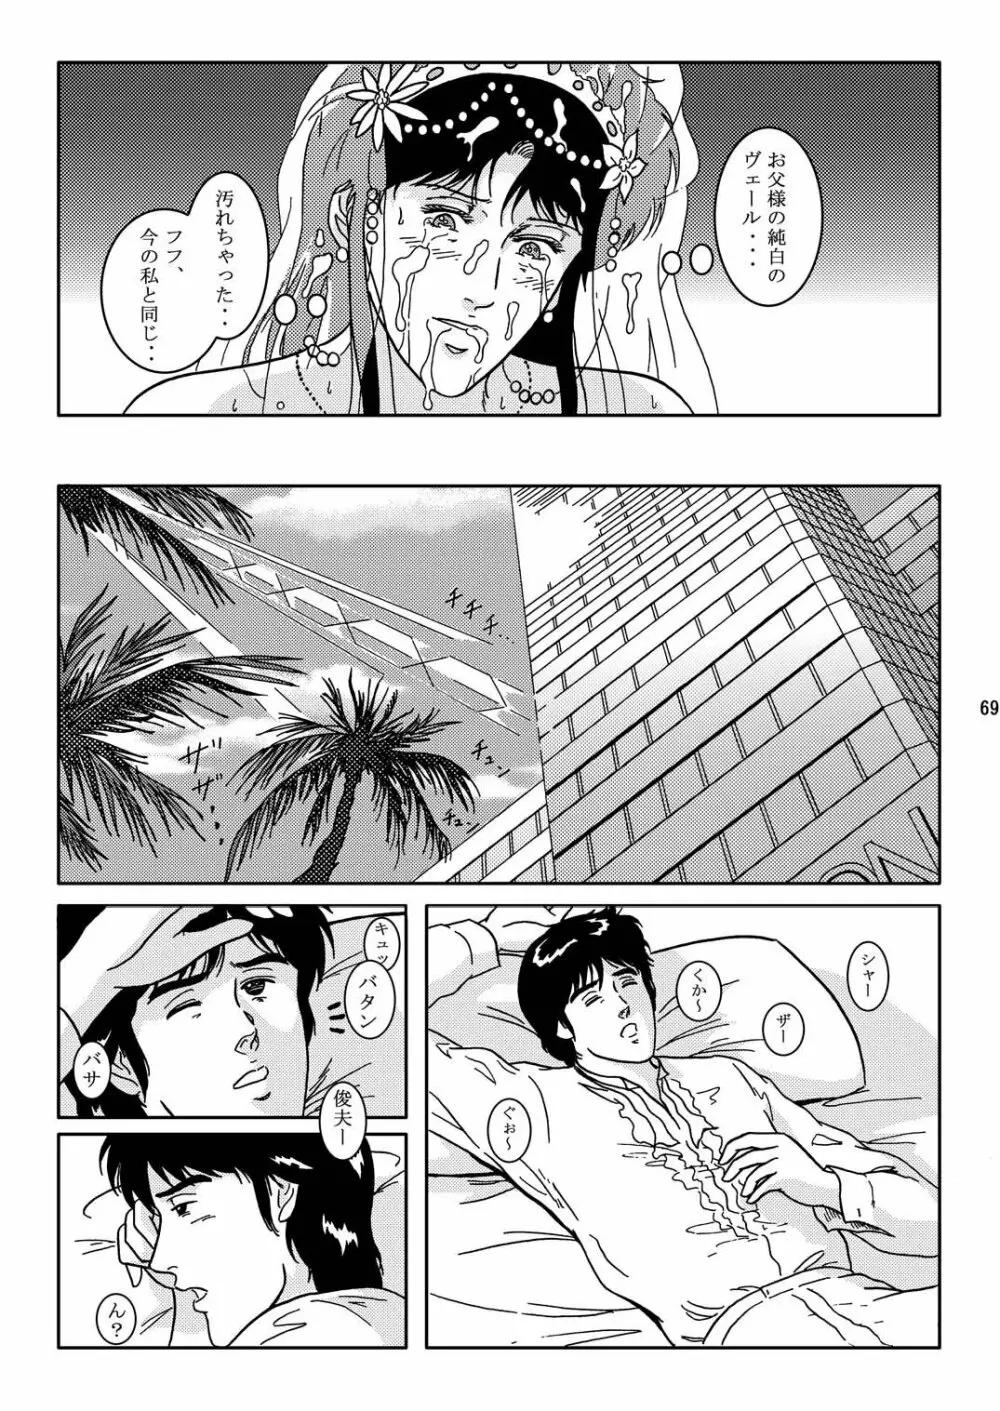 夜間飛行 vol.2 LOCK STEADY - page68